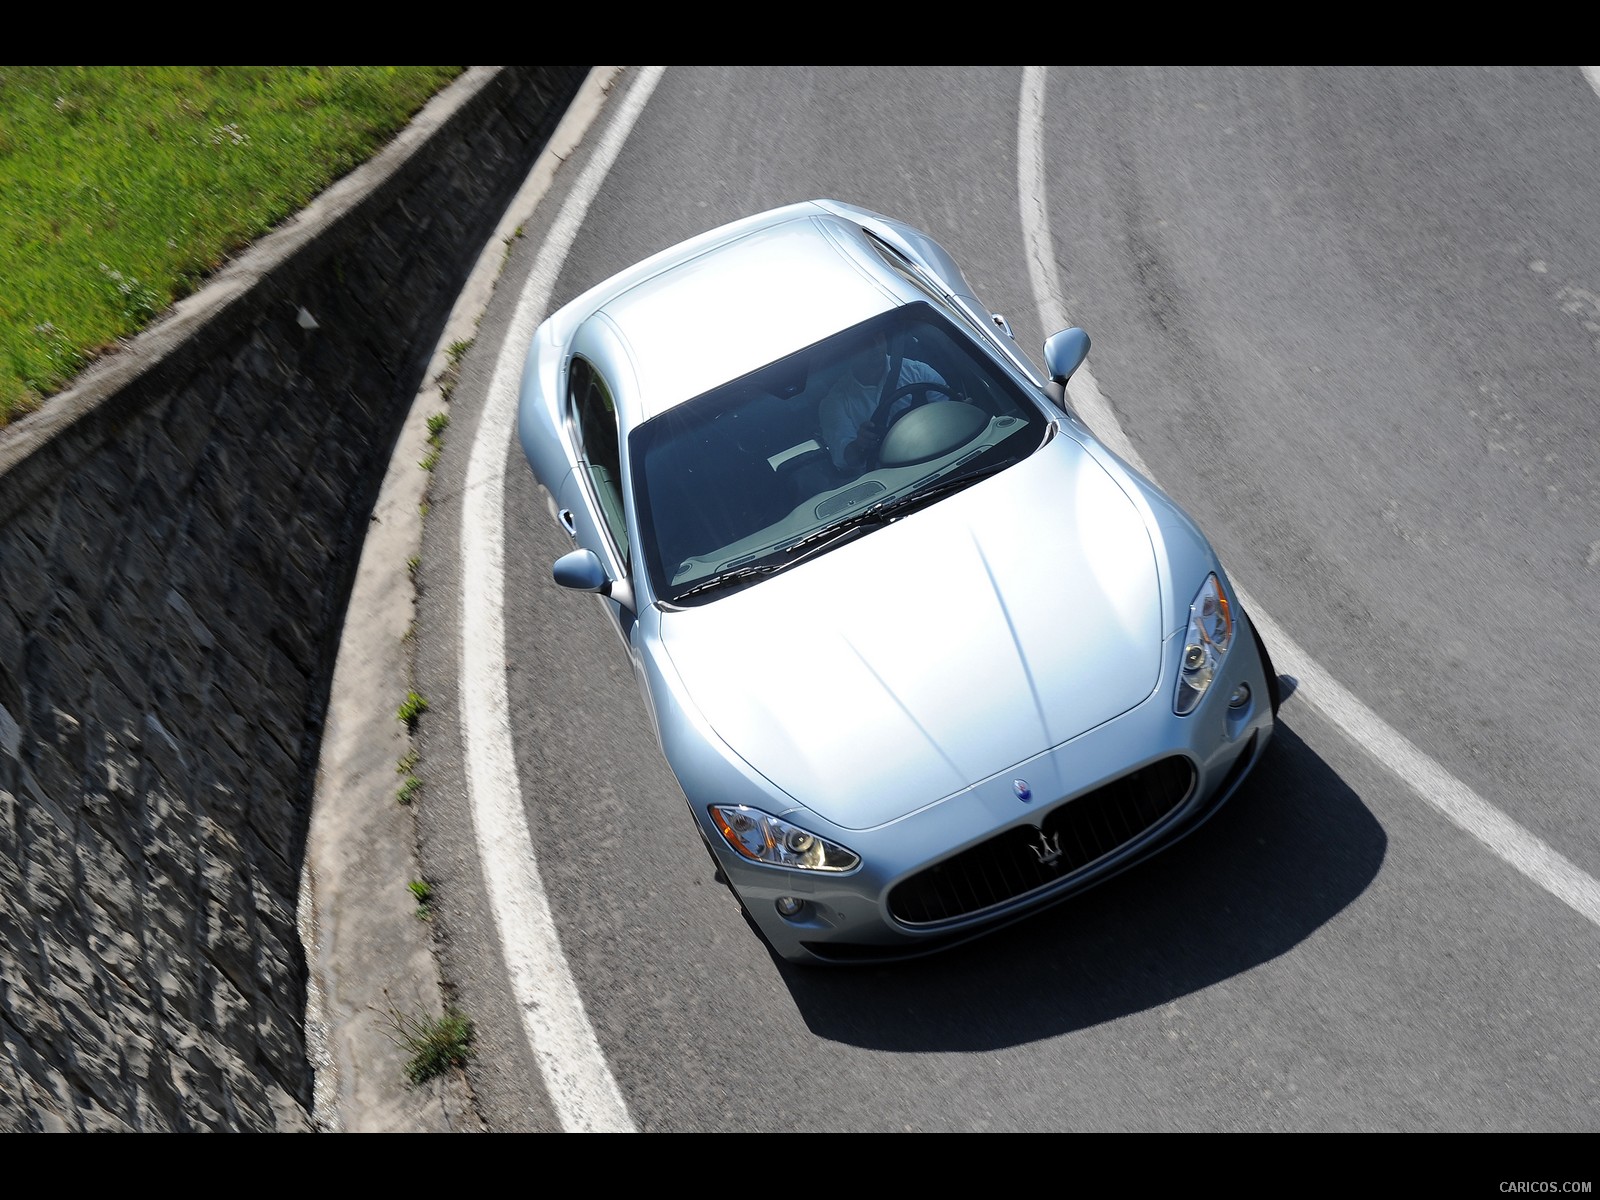 Maserati GranTurismo S Automatic (2010)  - Top, #35 of 58